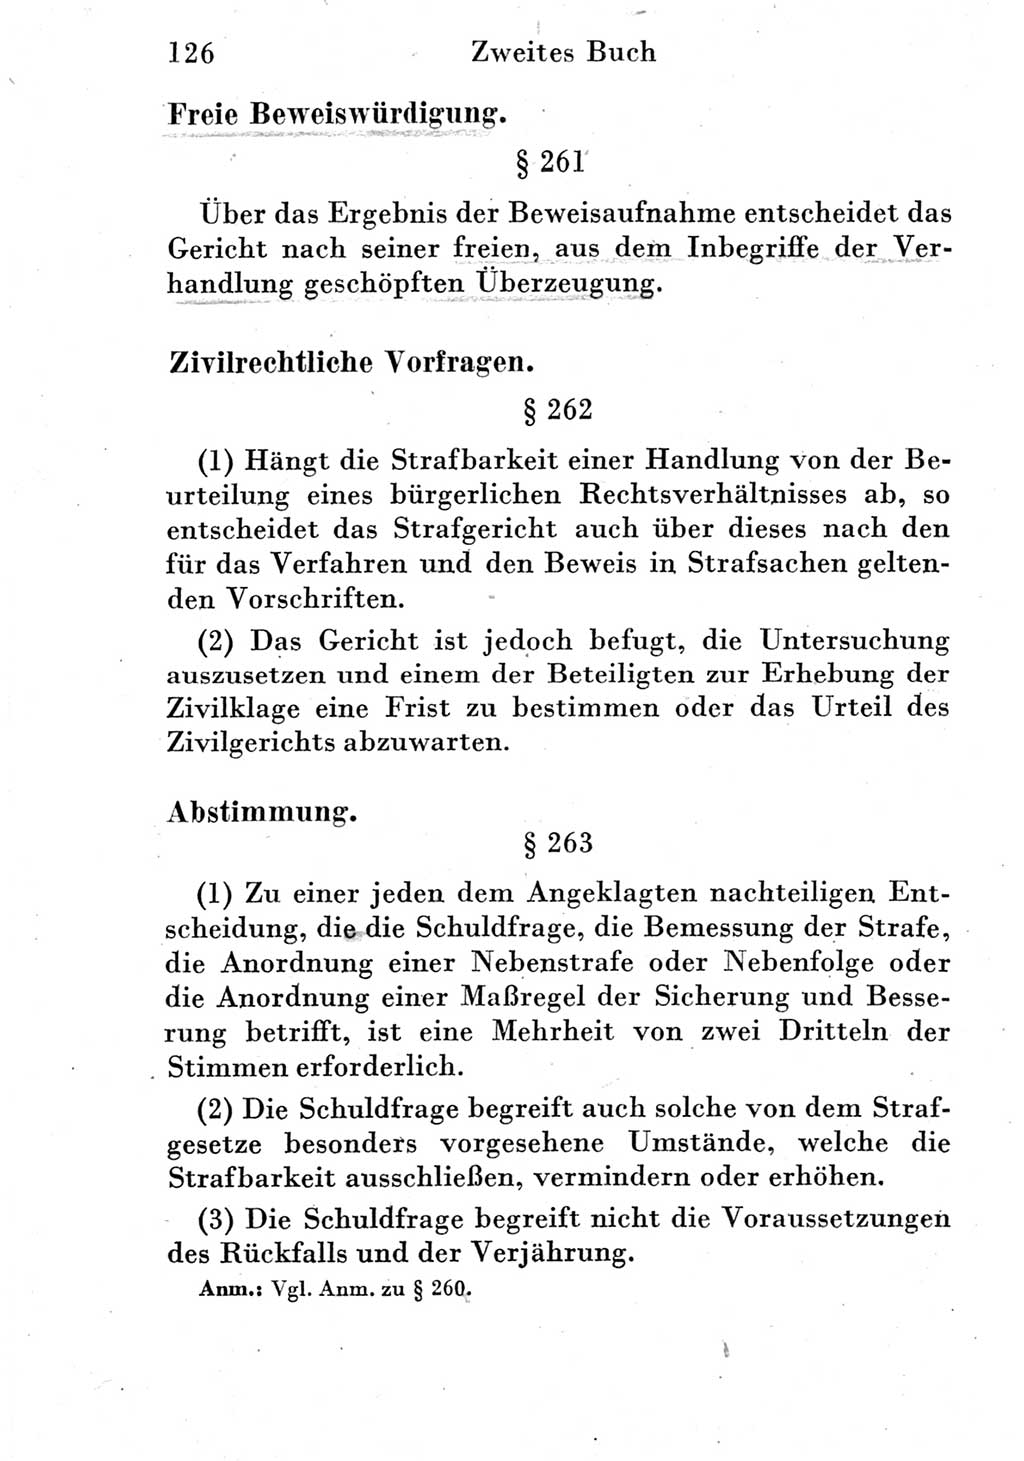 Strafprozeßordnung (StPO), Gerichtsverfassungsgesetz (GVG) und zahlreiche Nebengesetze der Deutschen Demokratischen Republik (DDR) 1950, Seite 126 (StPO GVG Ges. DDR 1950, S. 126)